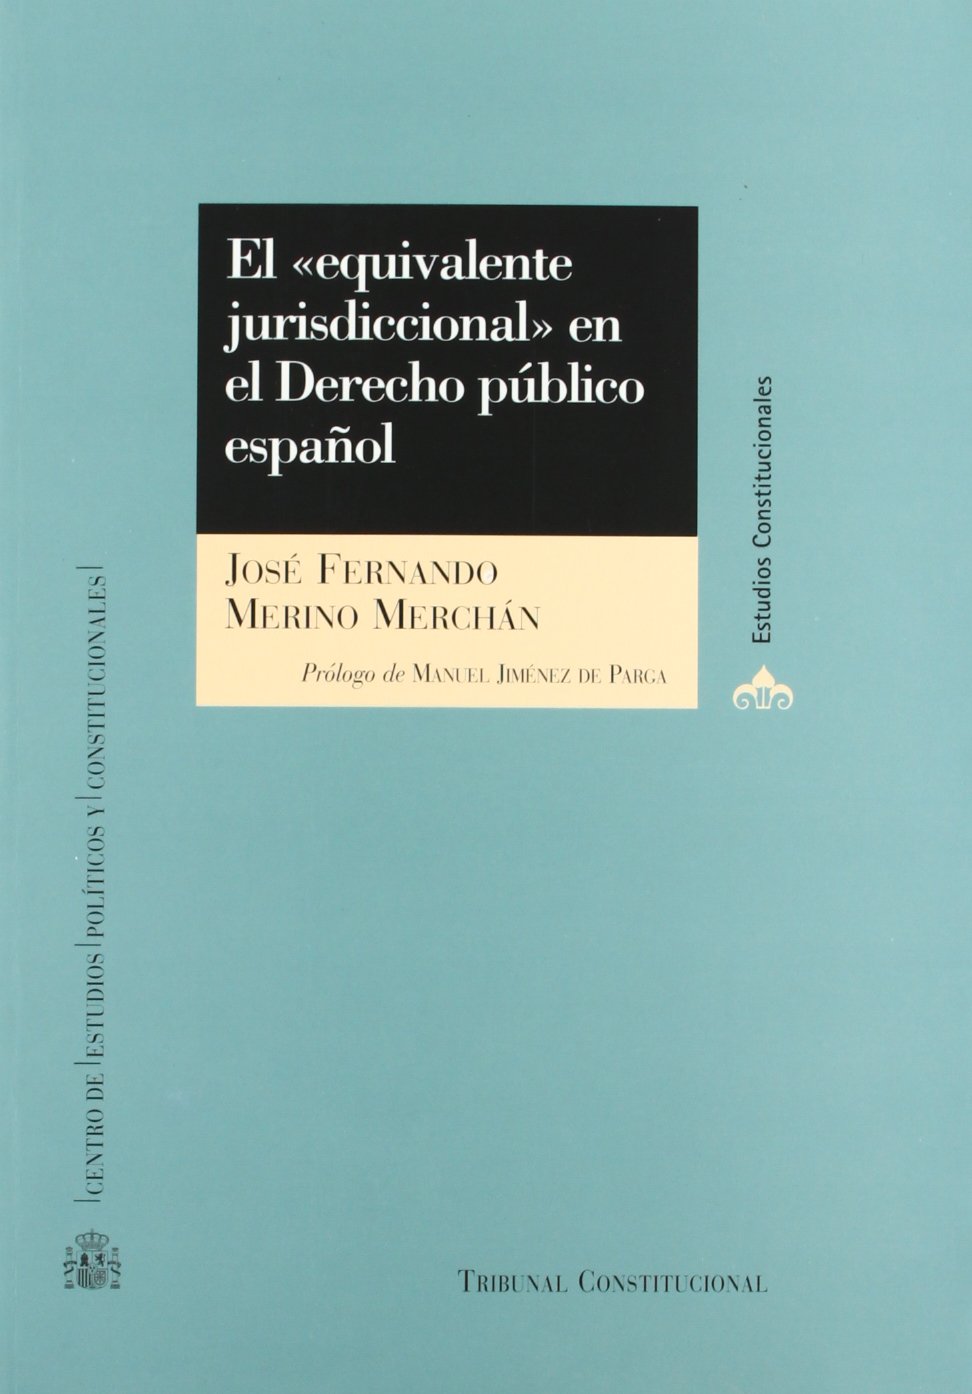 El "equivalente jurisdiccional" en el Derecho Público Español